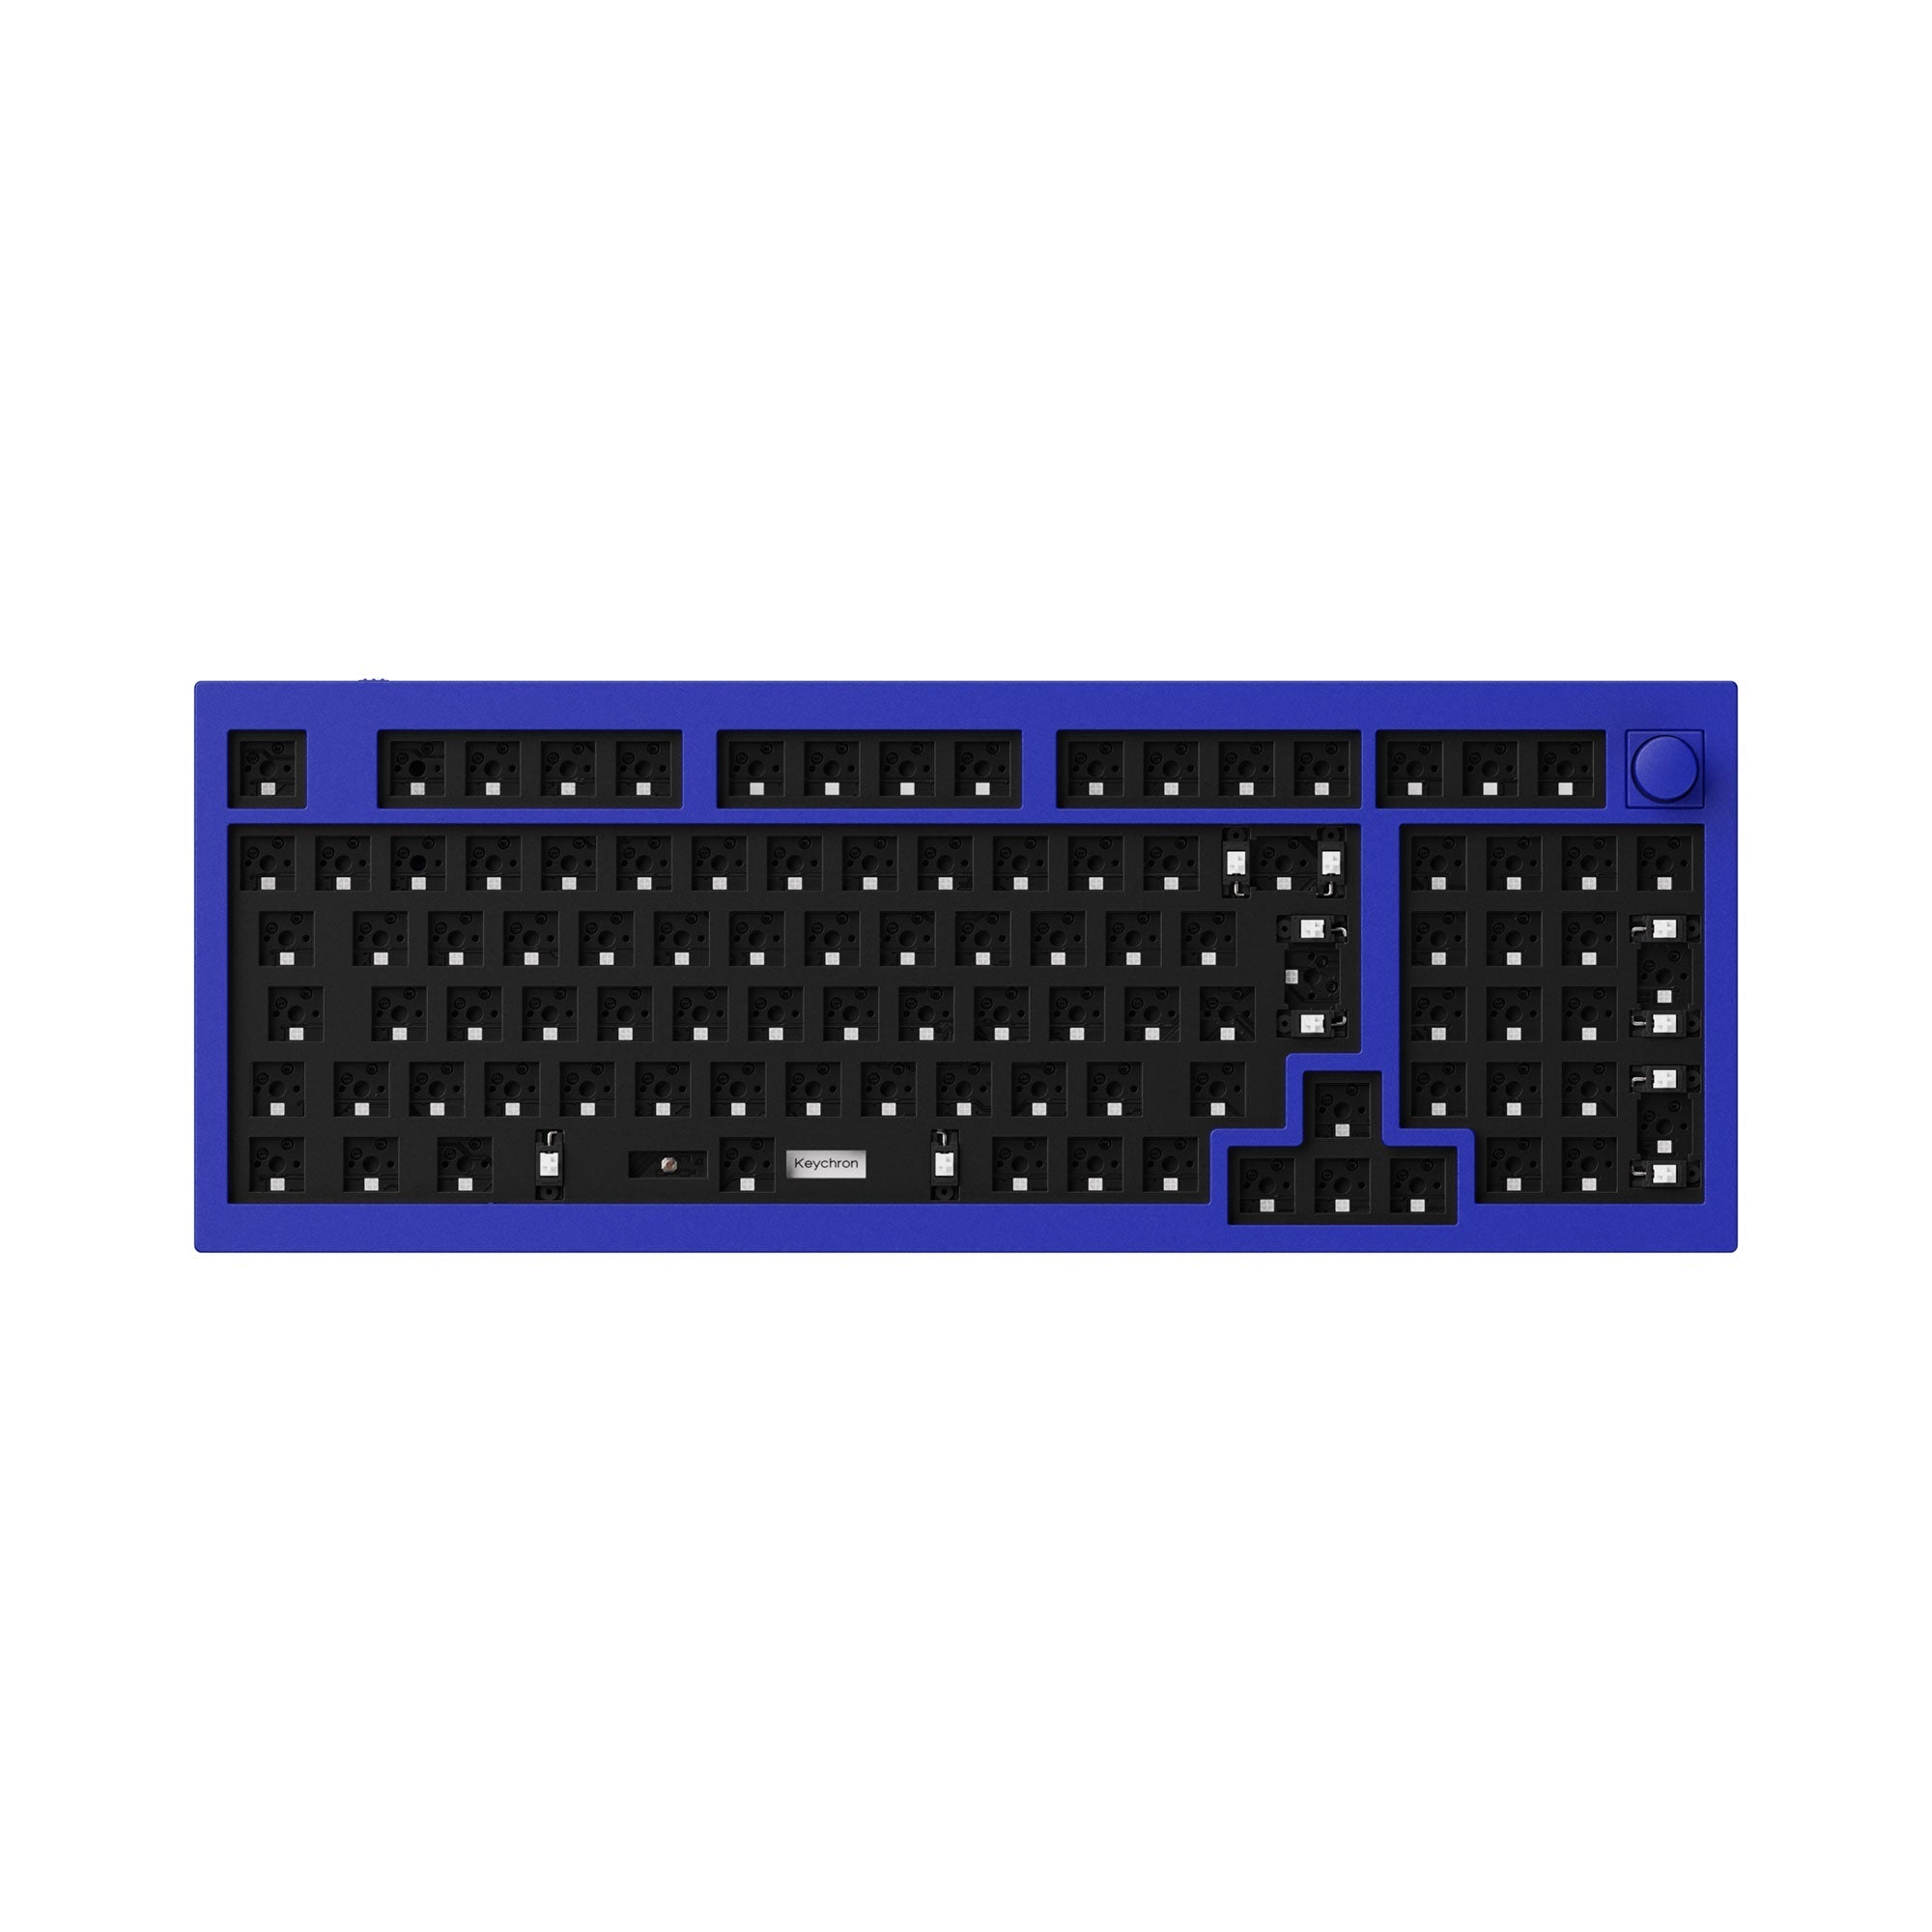 Keychron Q5 QMK Custom Mechanical Keyboard